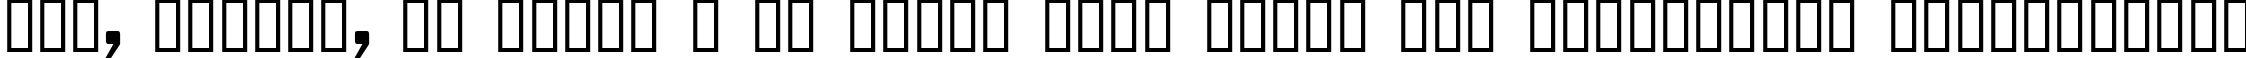 Пример написания шрифтом Ikarus  Regular текста на украинском